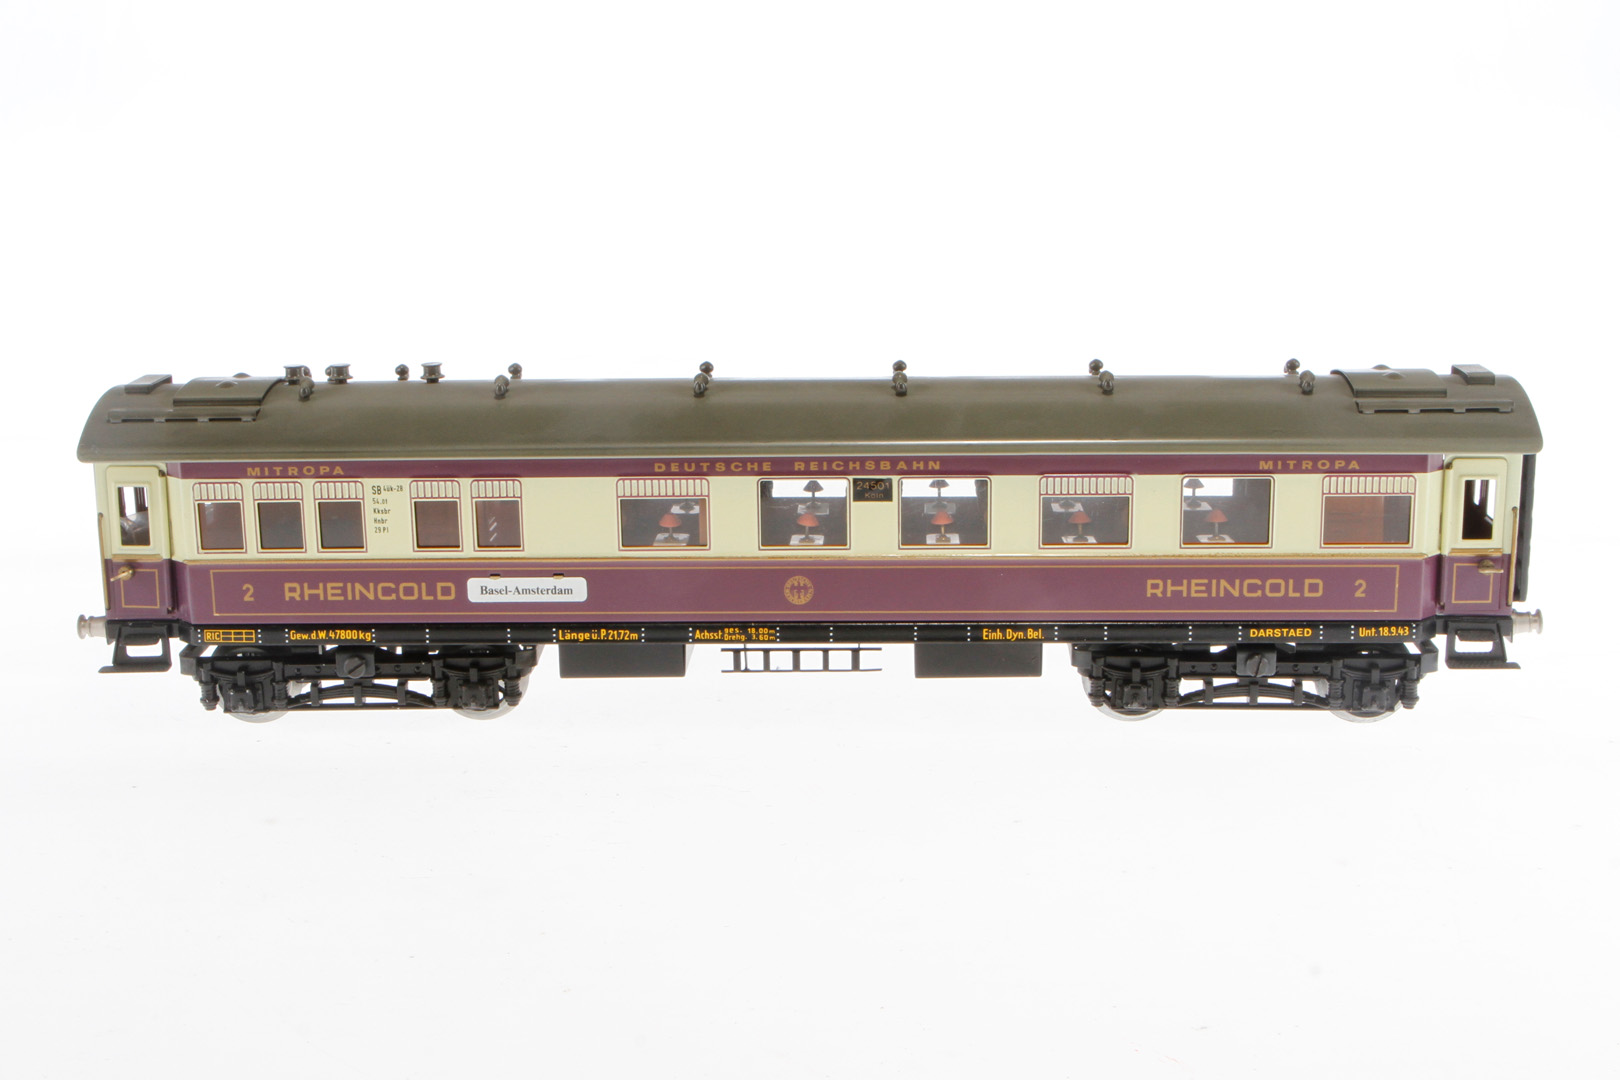 Darstaed Rheingoldwagen 24501, Spur 0, creme/violett, mit Inneneinrichtung, 4 AT und Schildern, 2.